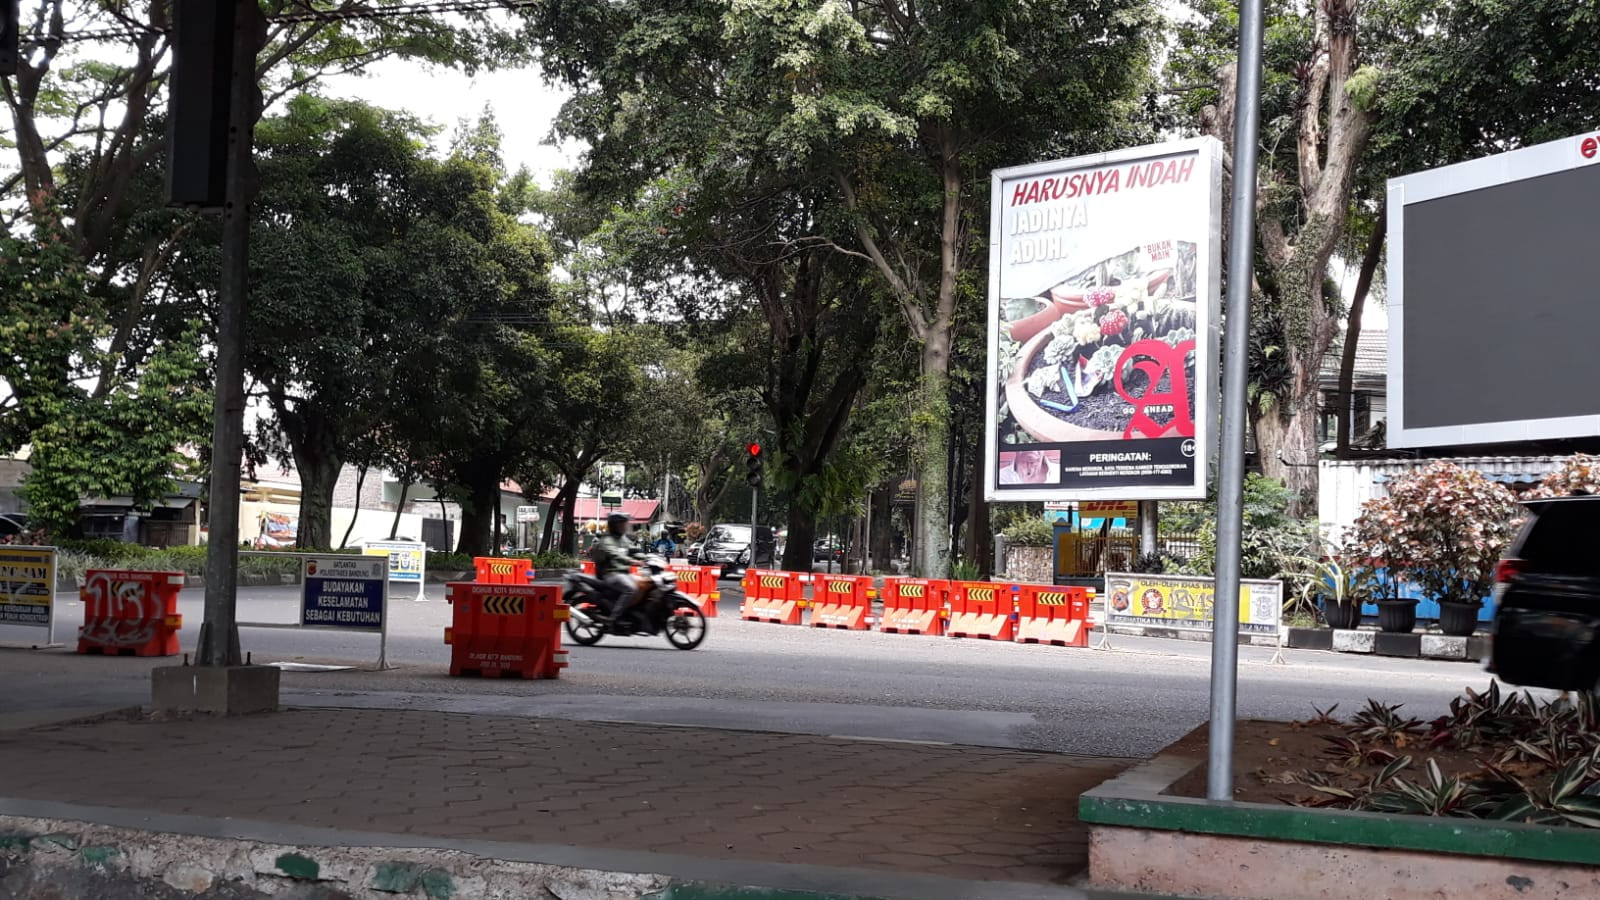 Kurang Dari 12 Jam, Spanduk Arteria Dahlan Musuh Orang Sunda Hilang - JPNN.com Jabar